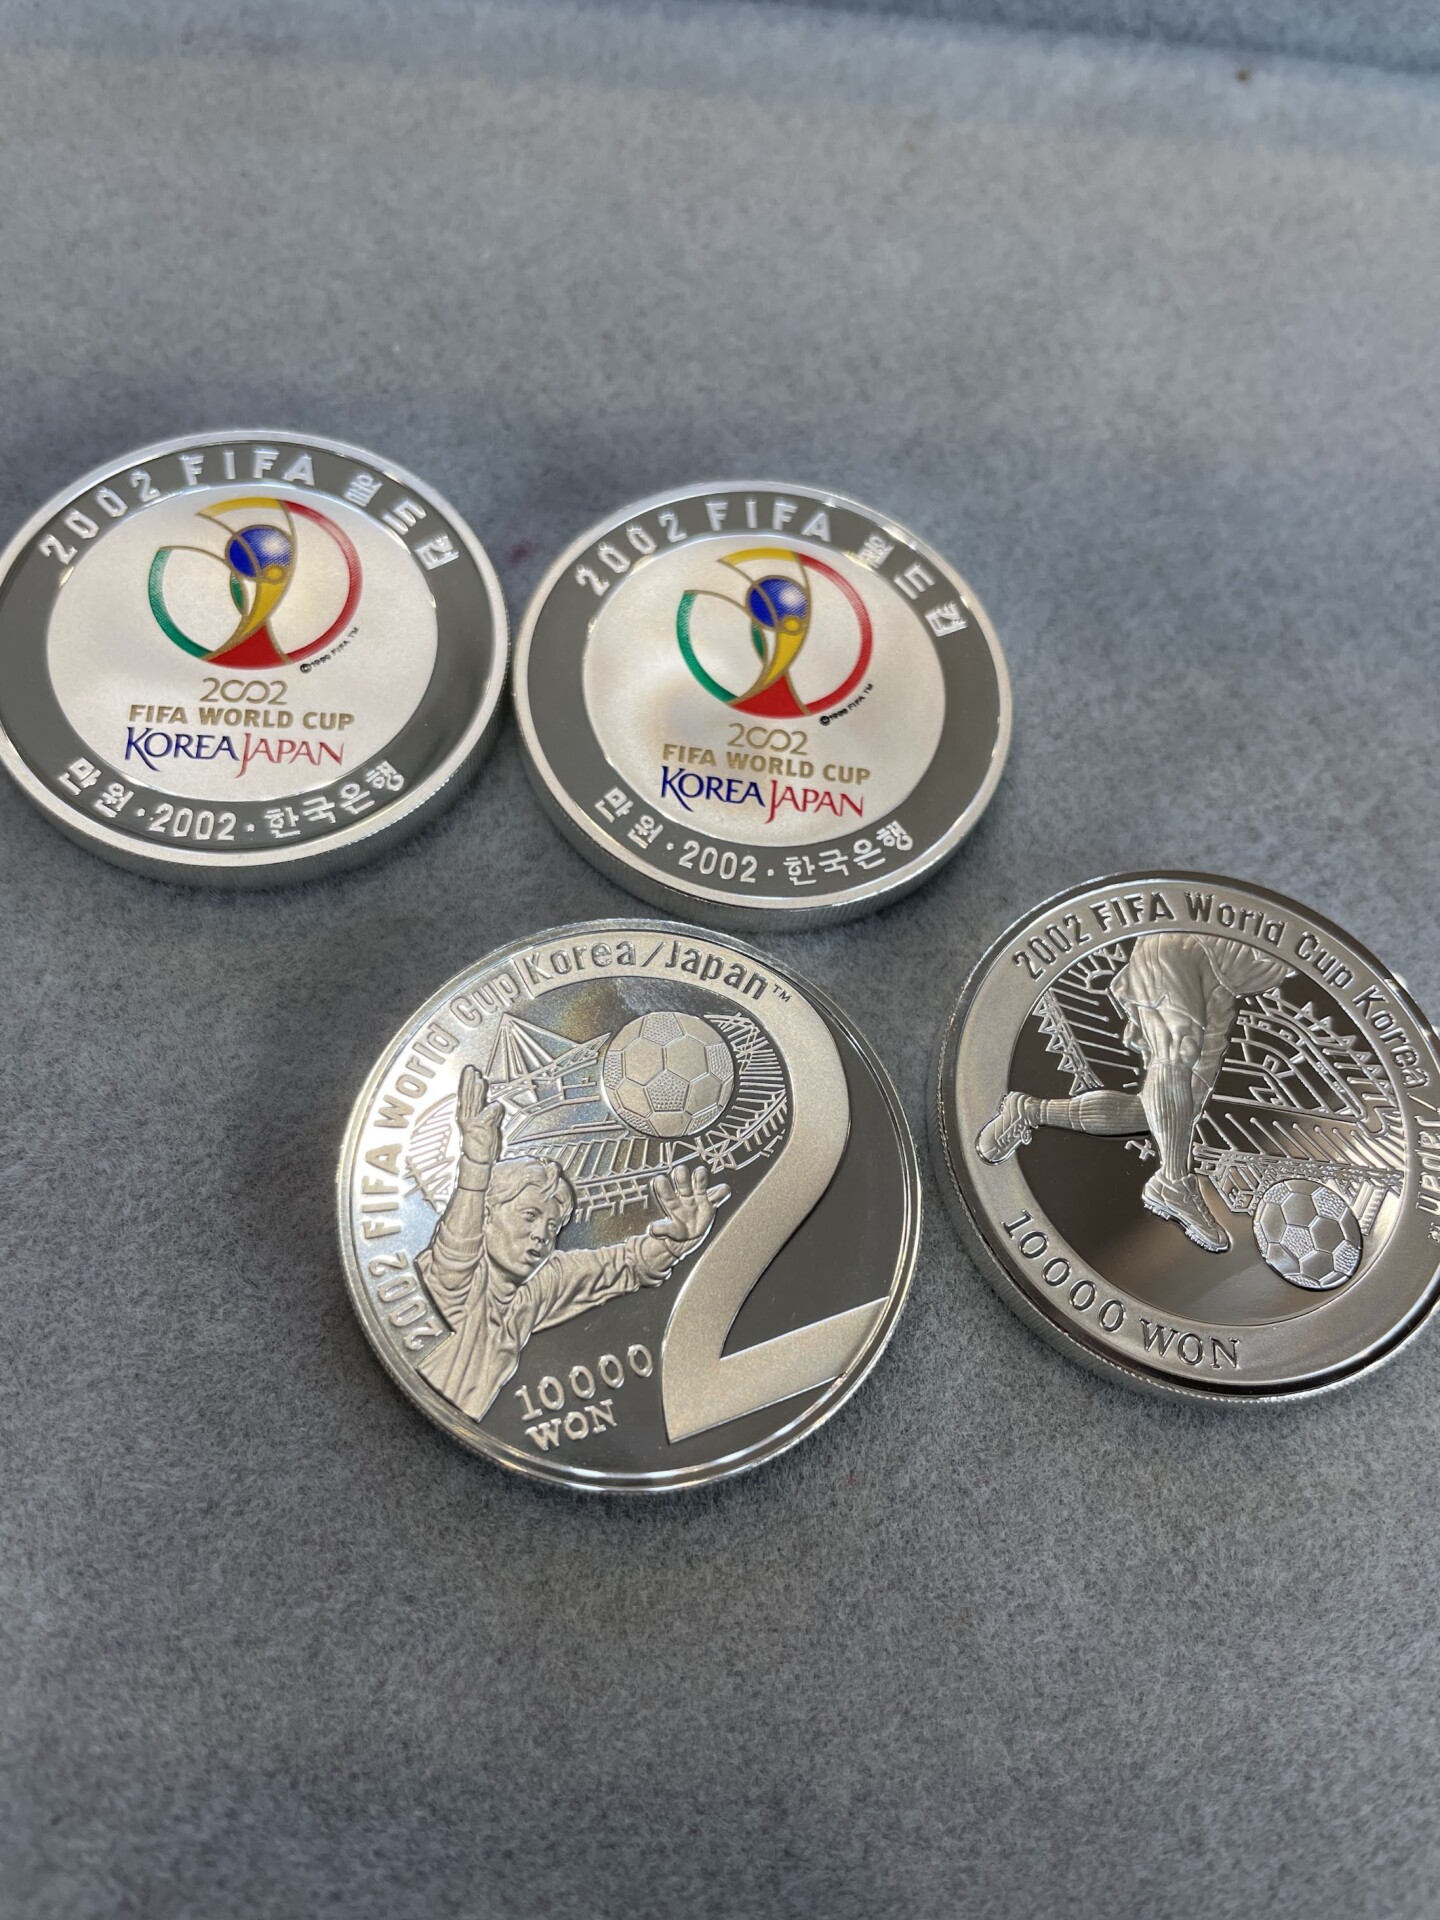 2002 FIFA WORLD CUP KOREA JAPAN 日韓ワールドカップ 記念銀貨 10000ウォン 4枚セット